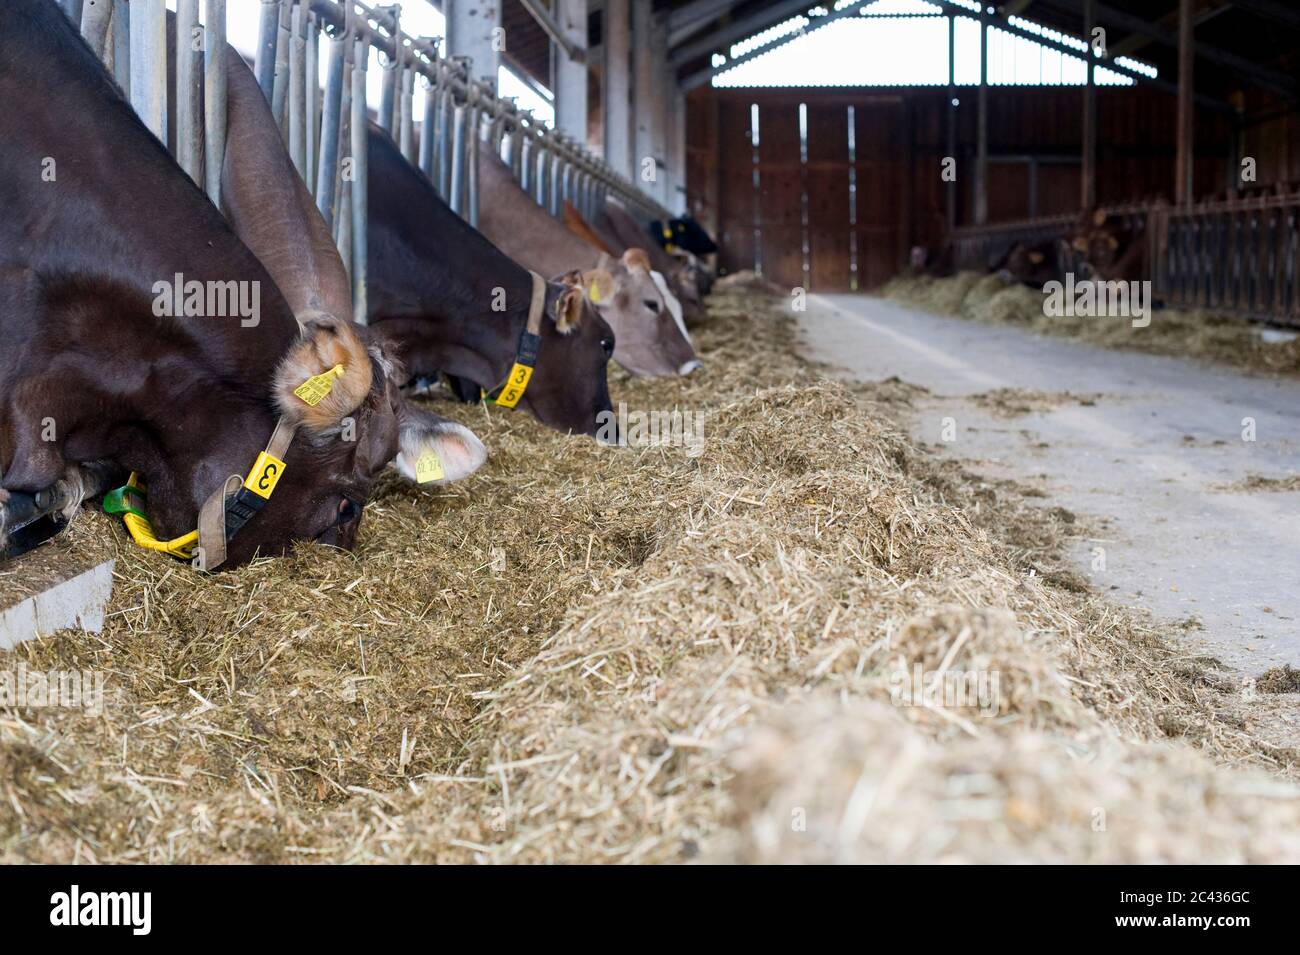 Les vaches dans un stable mangent du foin, Bavière, Allemagne Banque D'Images